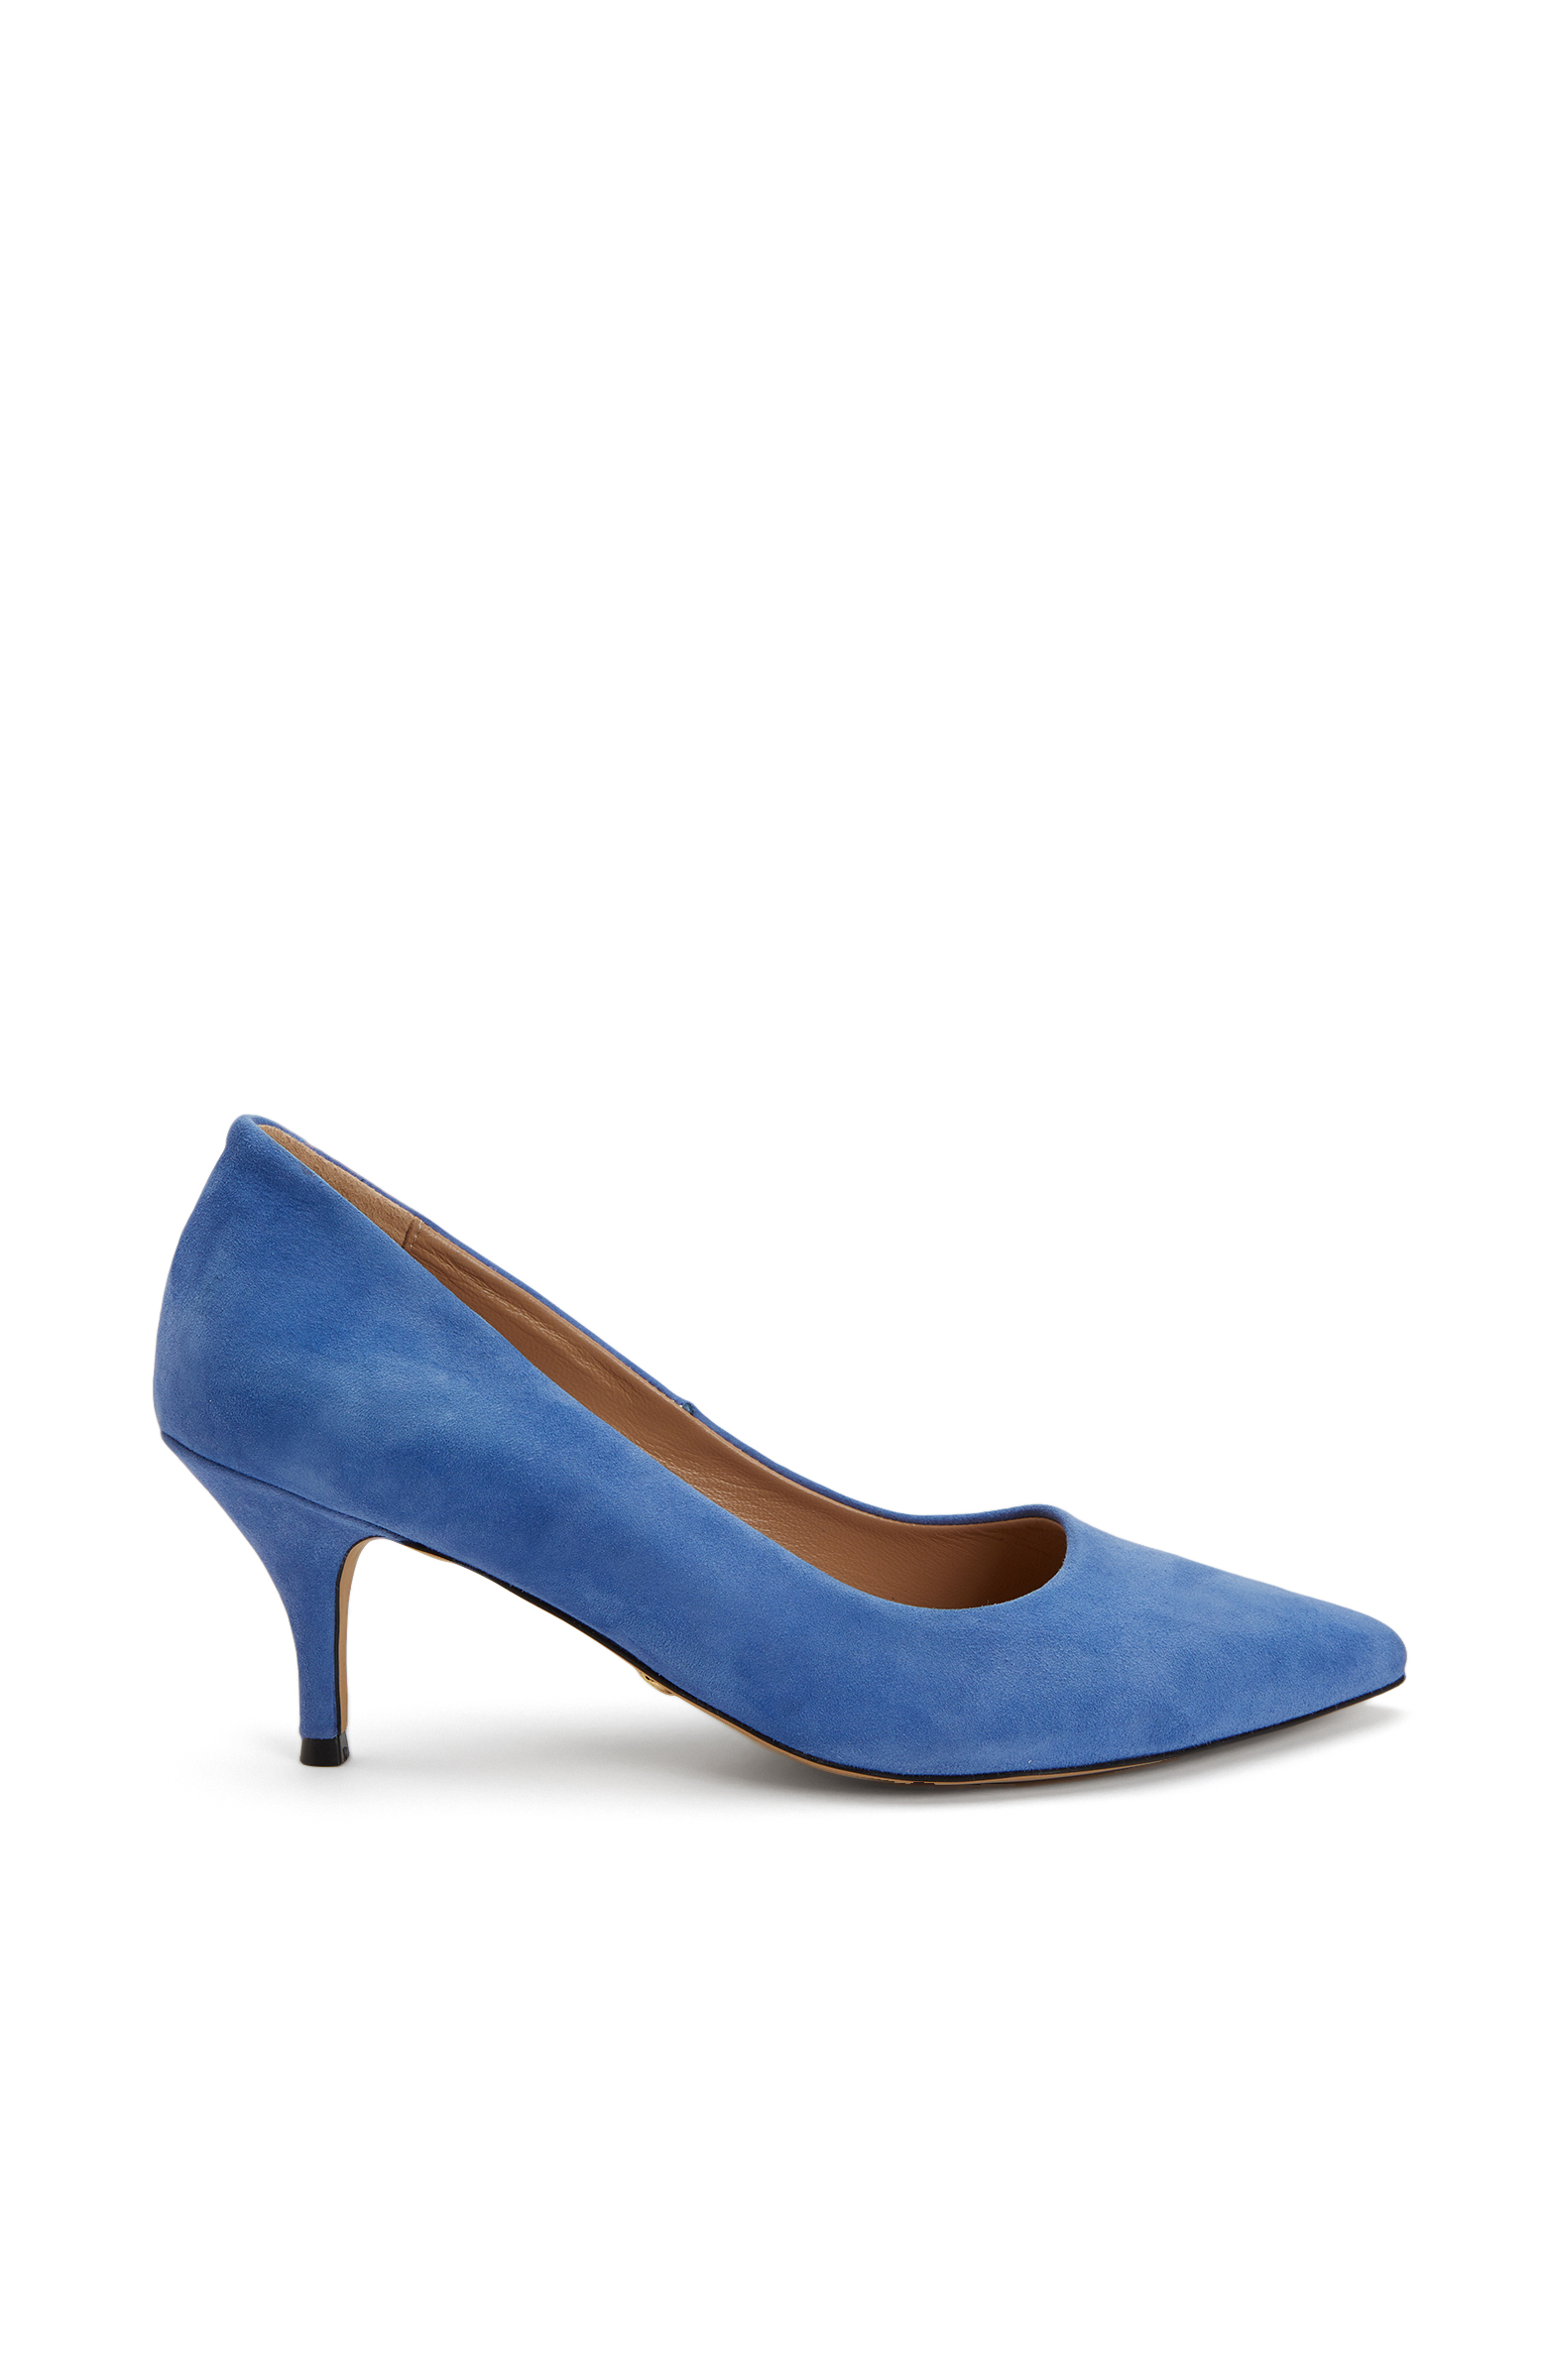 Mavi Süet Topuklu Ayakkabı -1